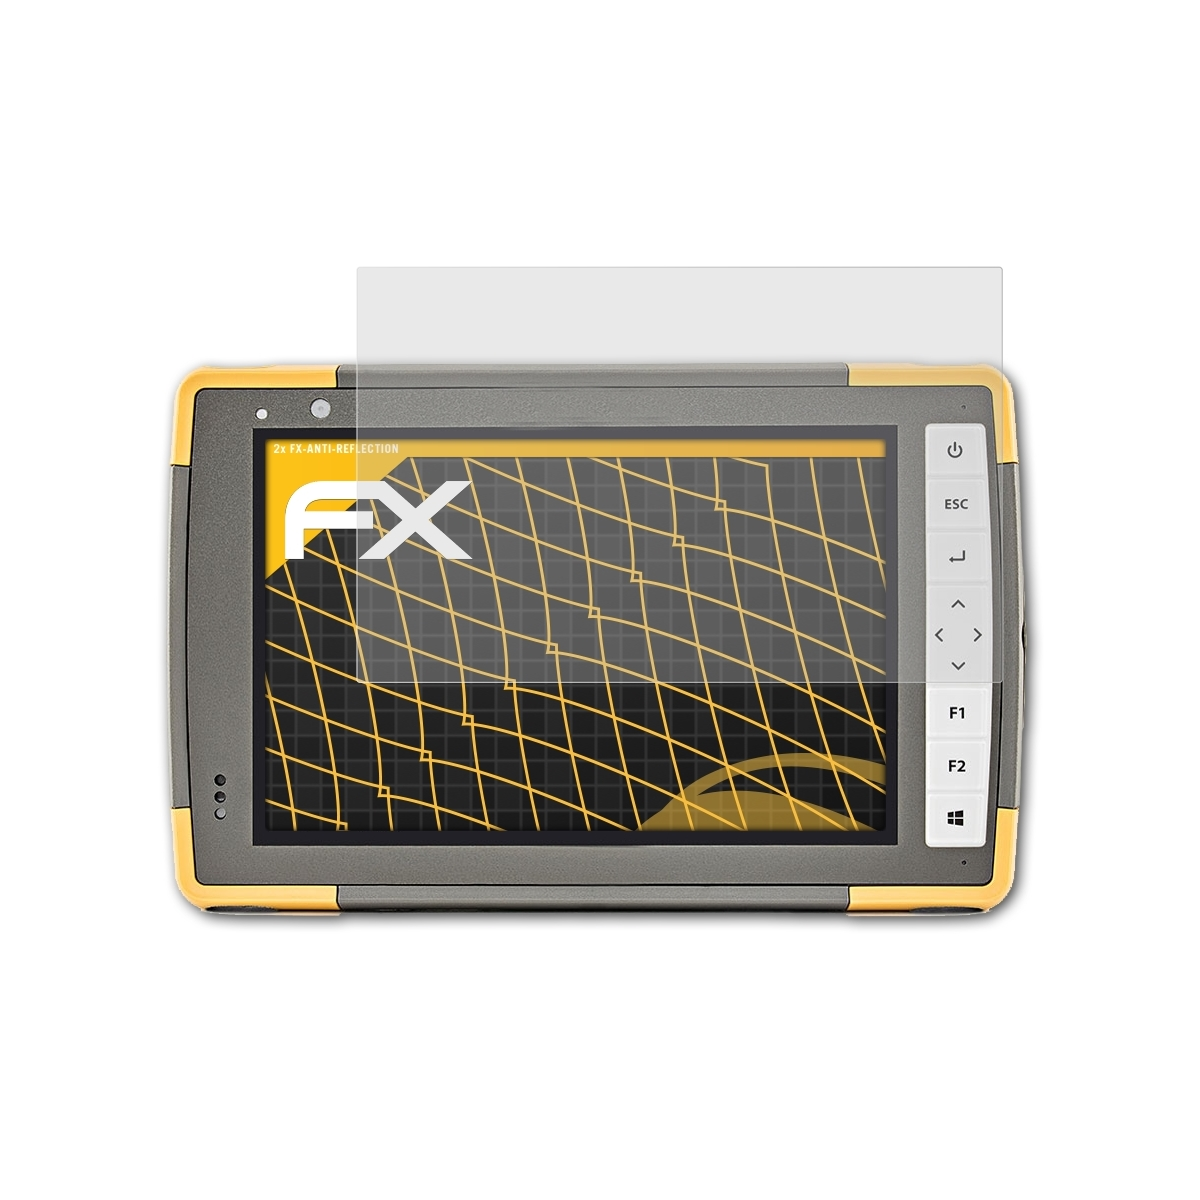 ATFOLIX 2x FX-Antireflex FC-5000) Displayschutz(für Topcon